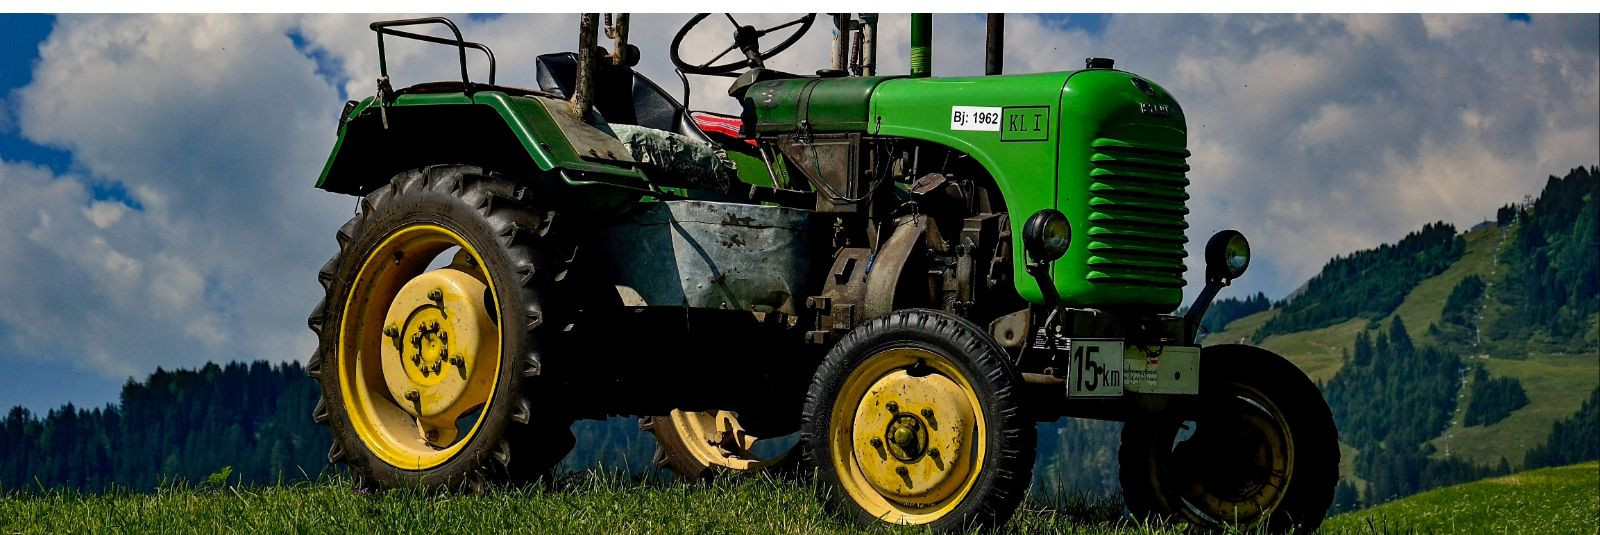 Traktorid on põllumajanduse ja maaelu lahutamatu osa ning nende tõrgeteta toimimine on iga talunikule ja põllumajandusettevõtjale ülioluline. Ükski põllutöö ei 